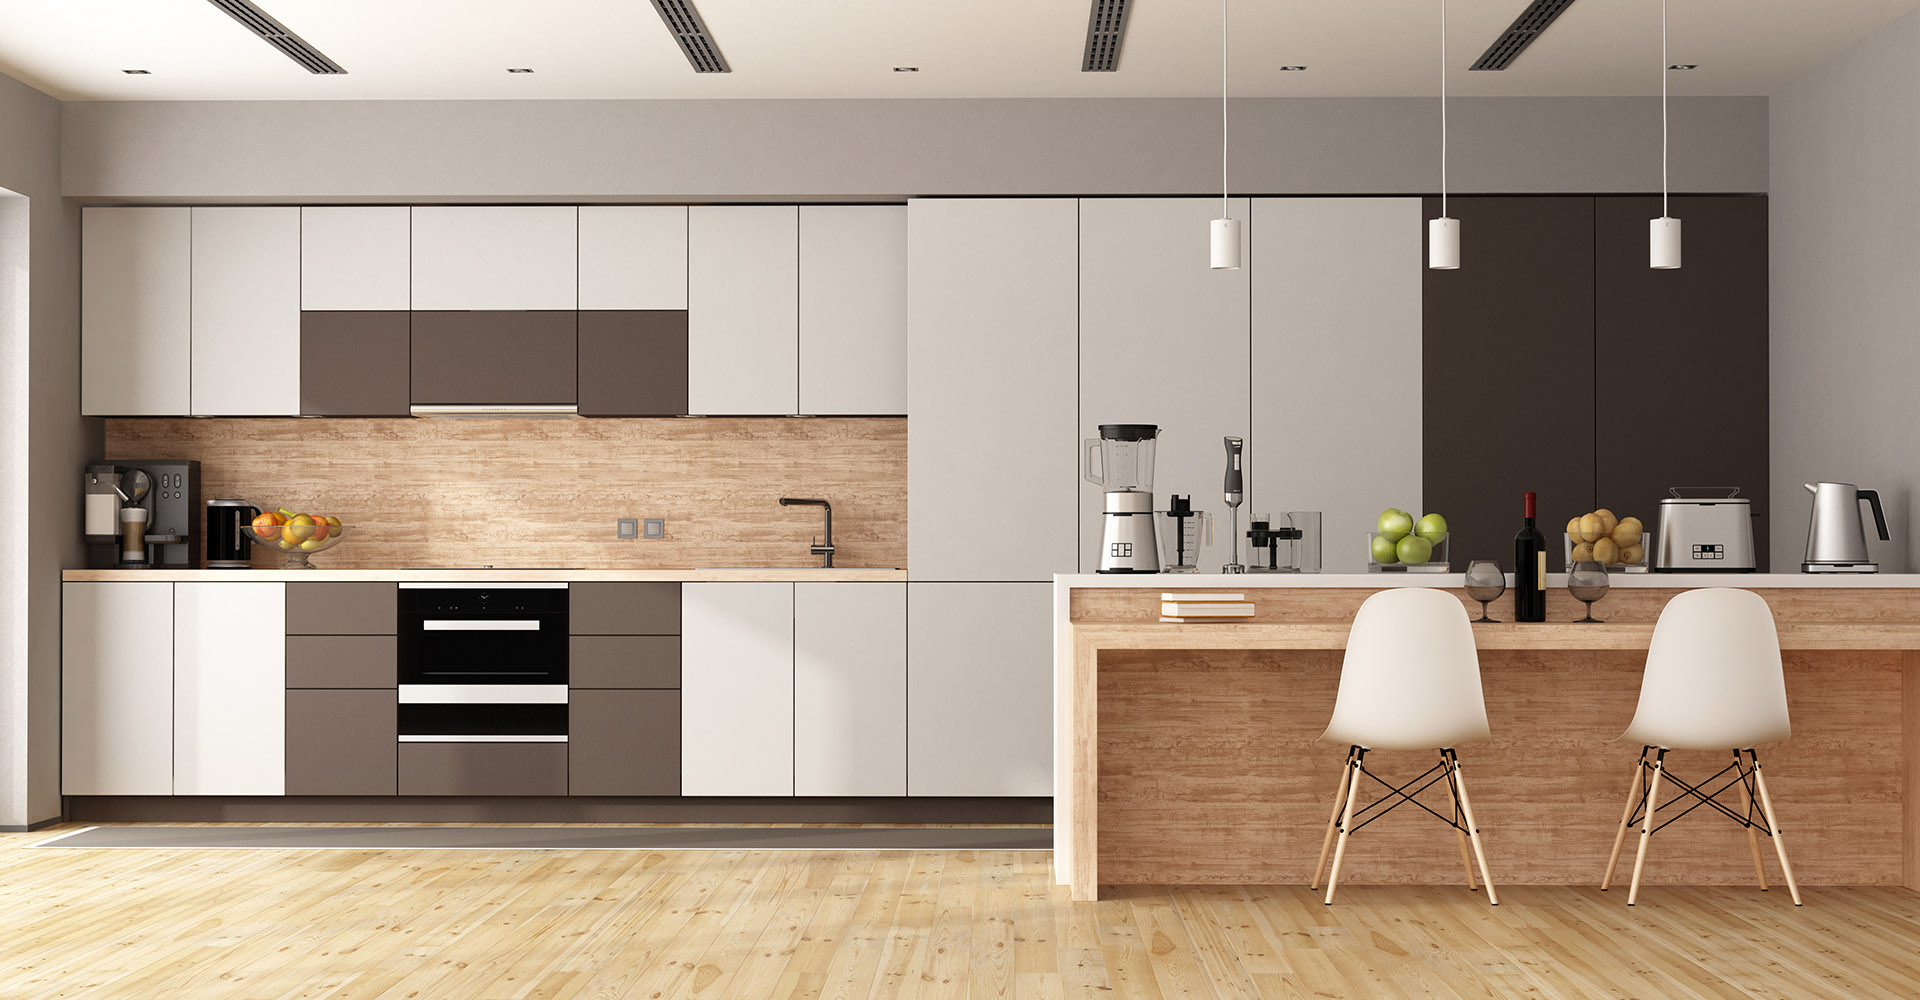 kitchen interior design photos free download